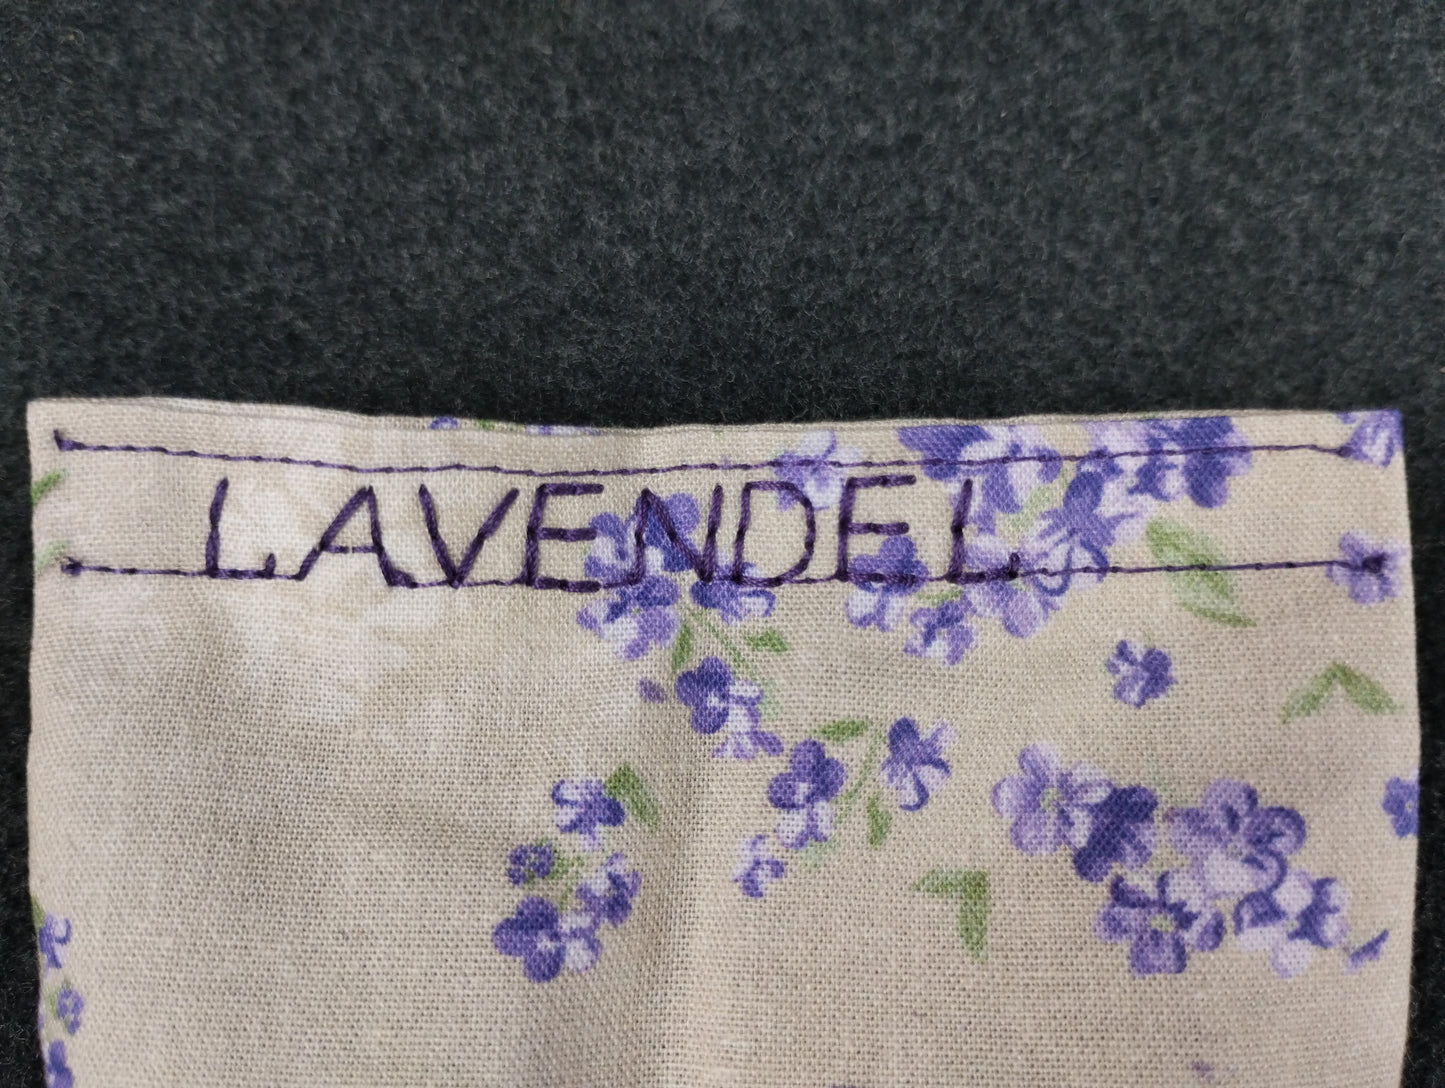 fertiges Duftkissen mit einem Lavendelmotiv. Beschriftet in Lila mit dem Namen Lavendel.